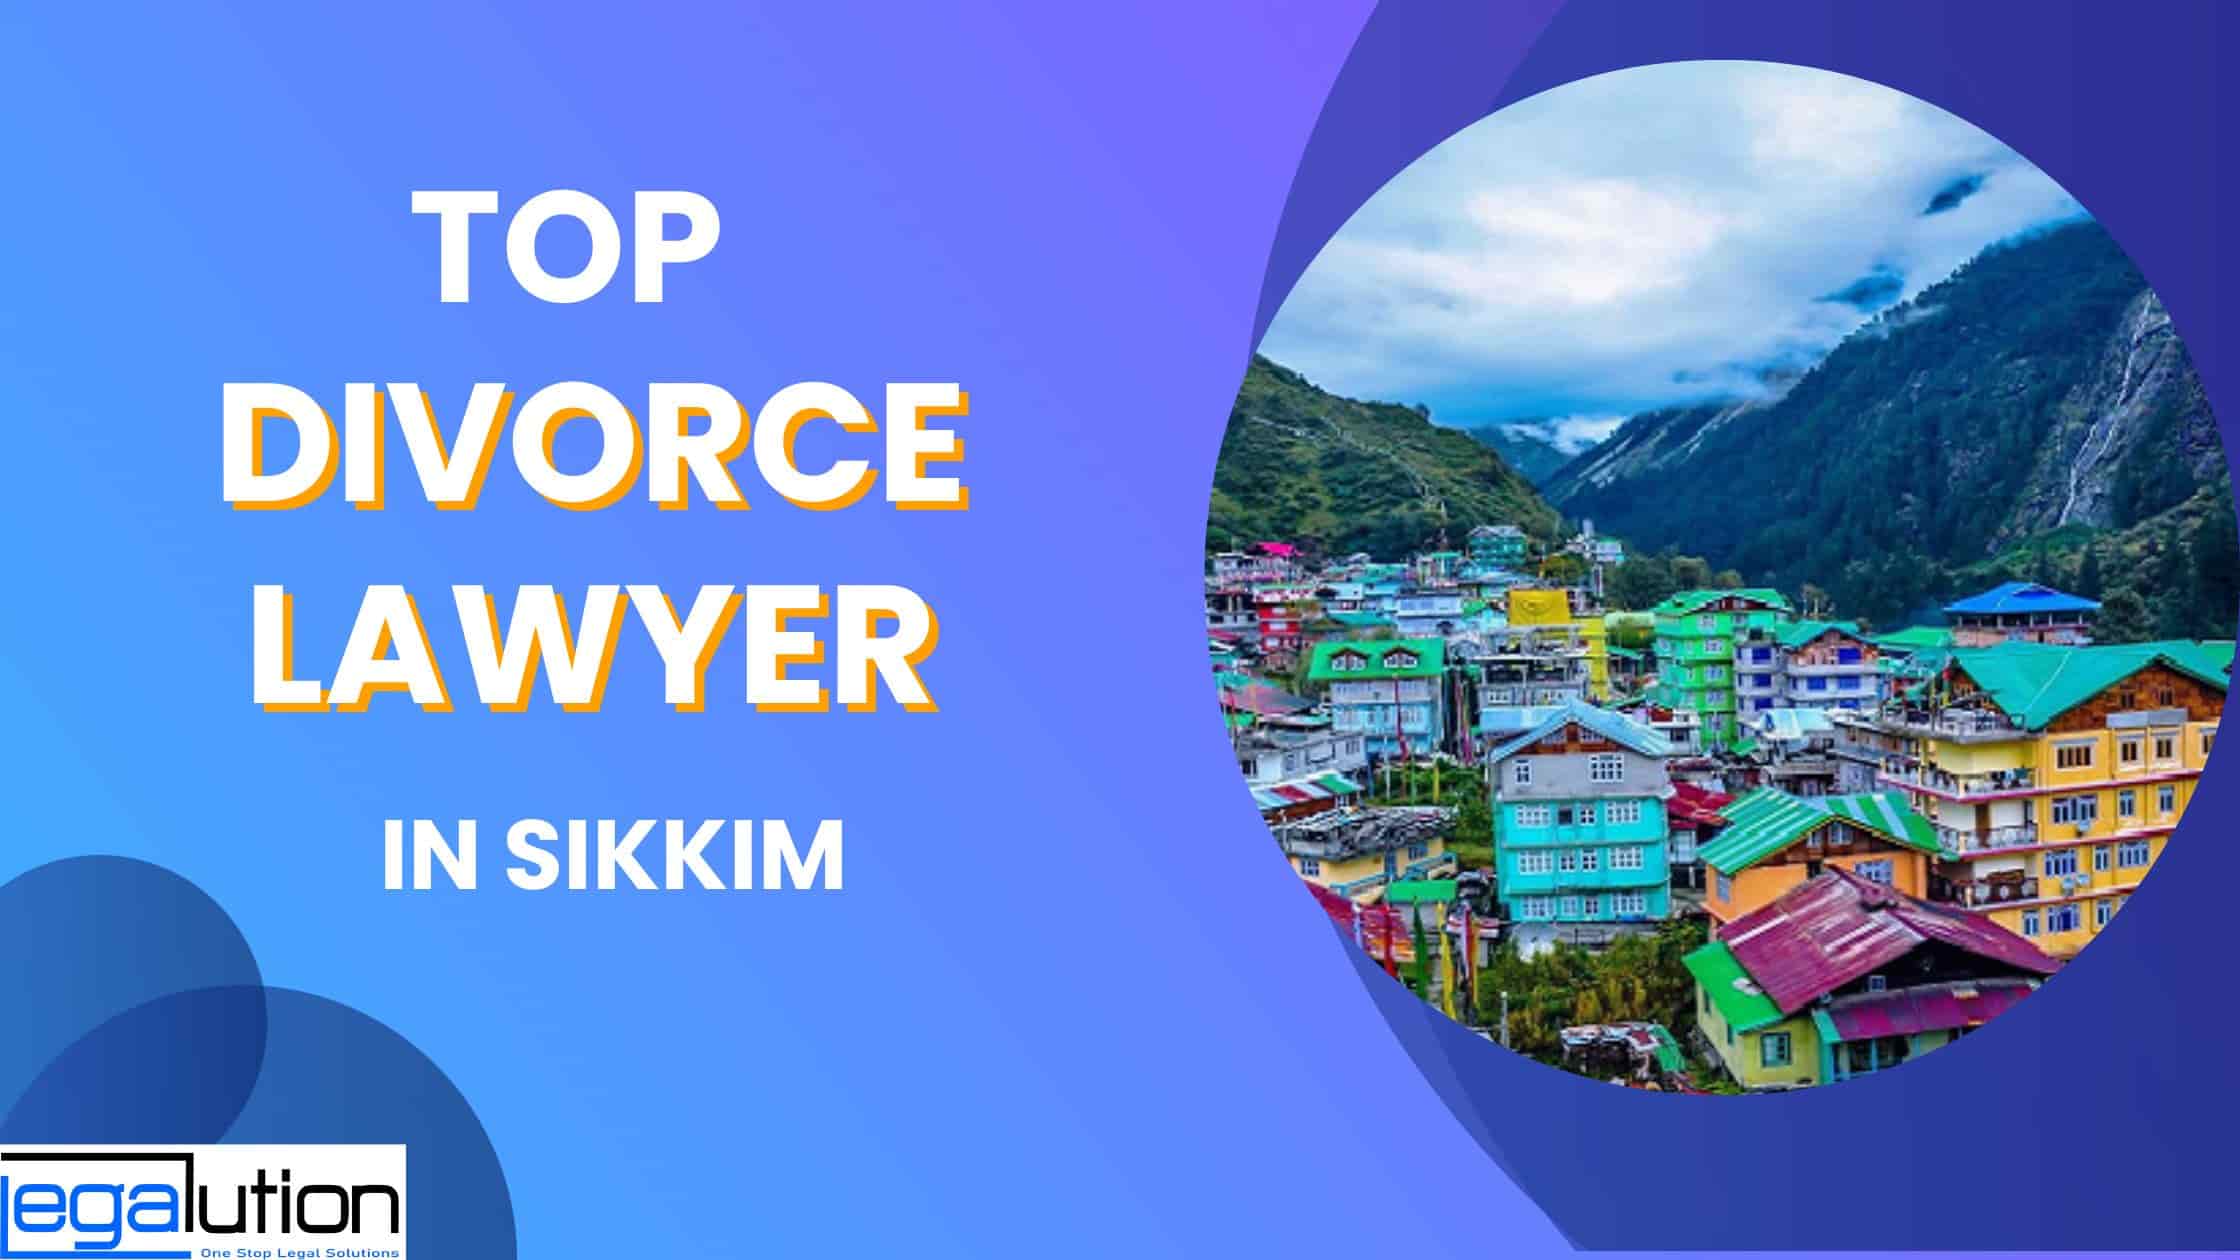 Best Divorce Lawyer in Sikkim